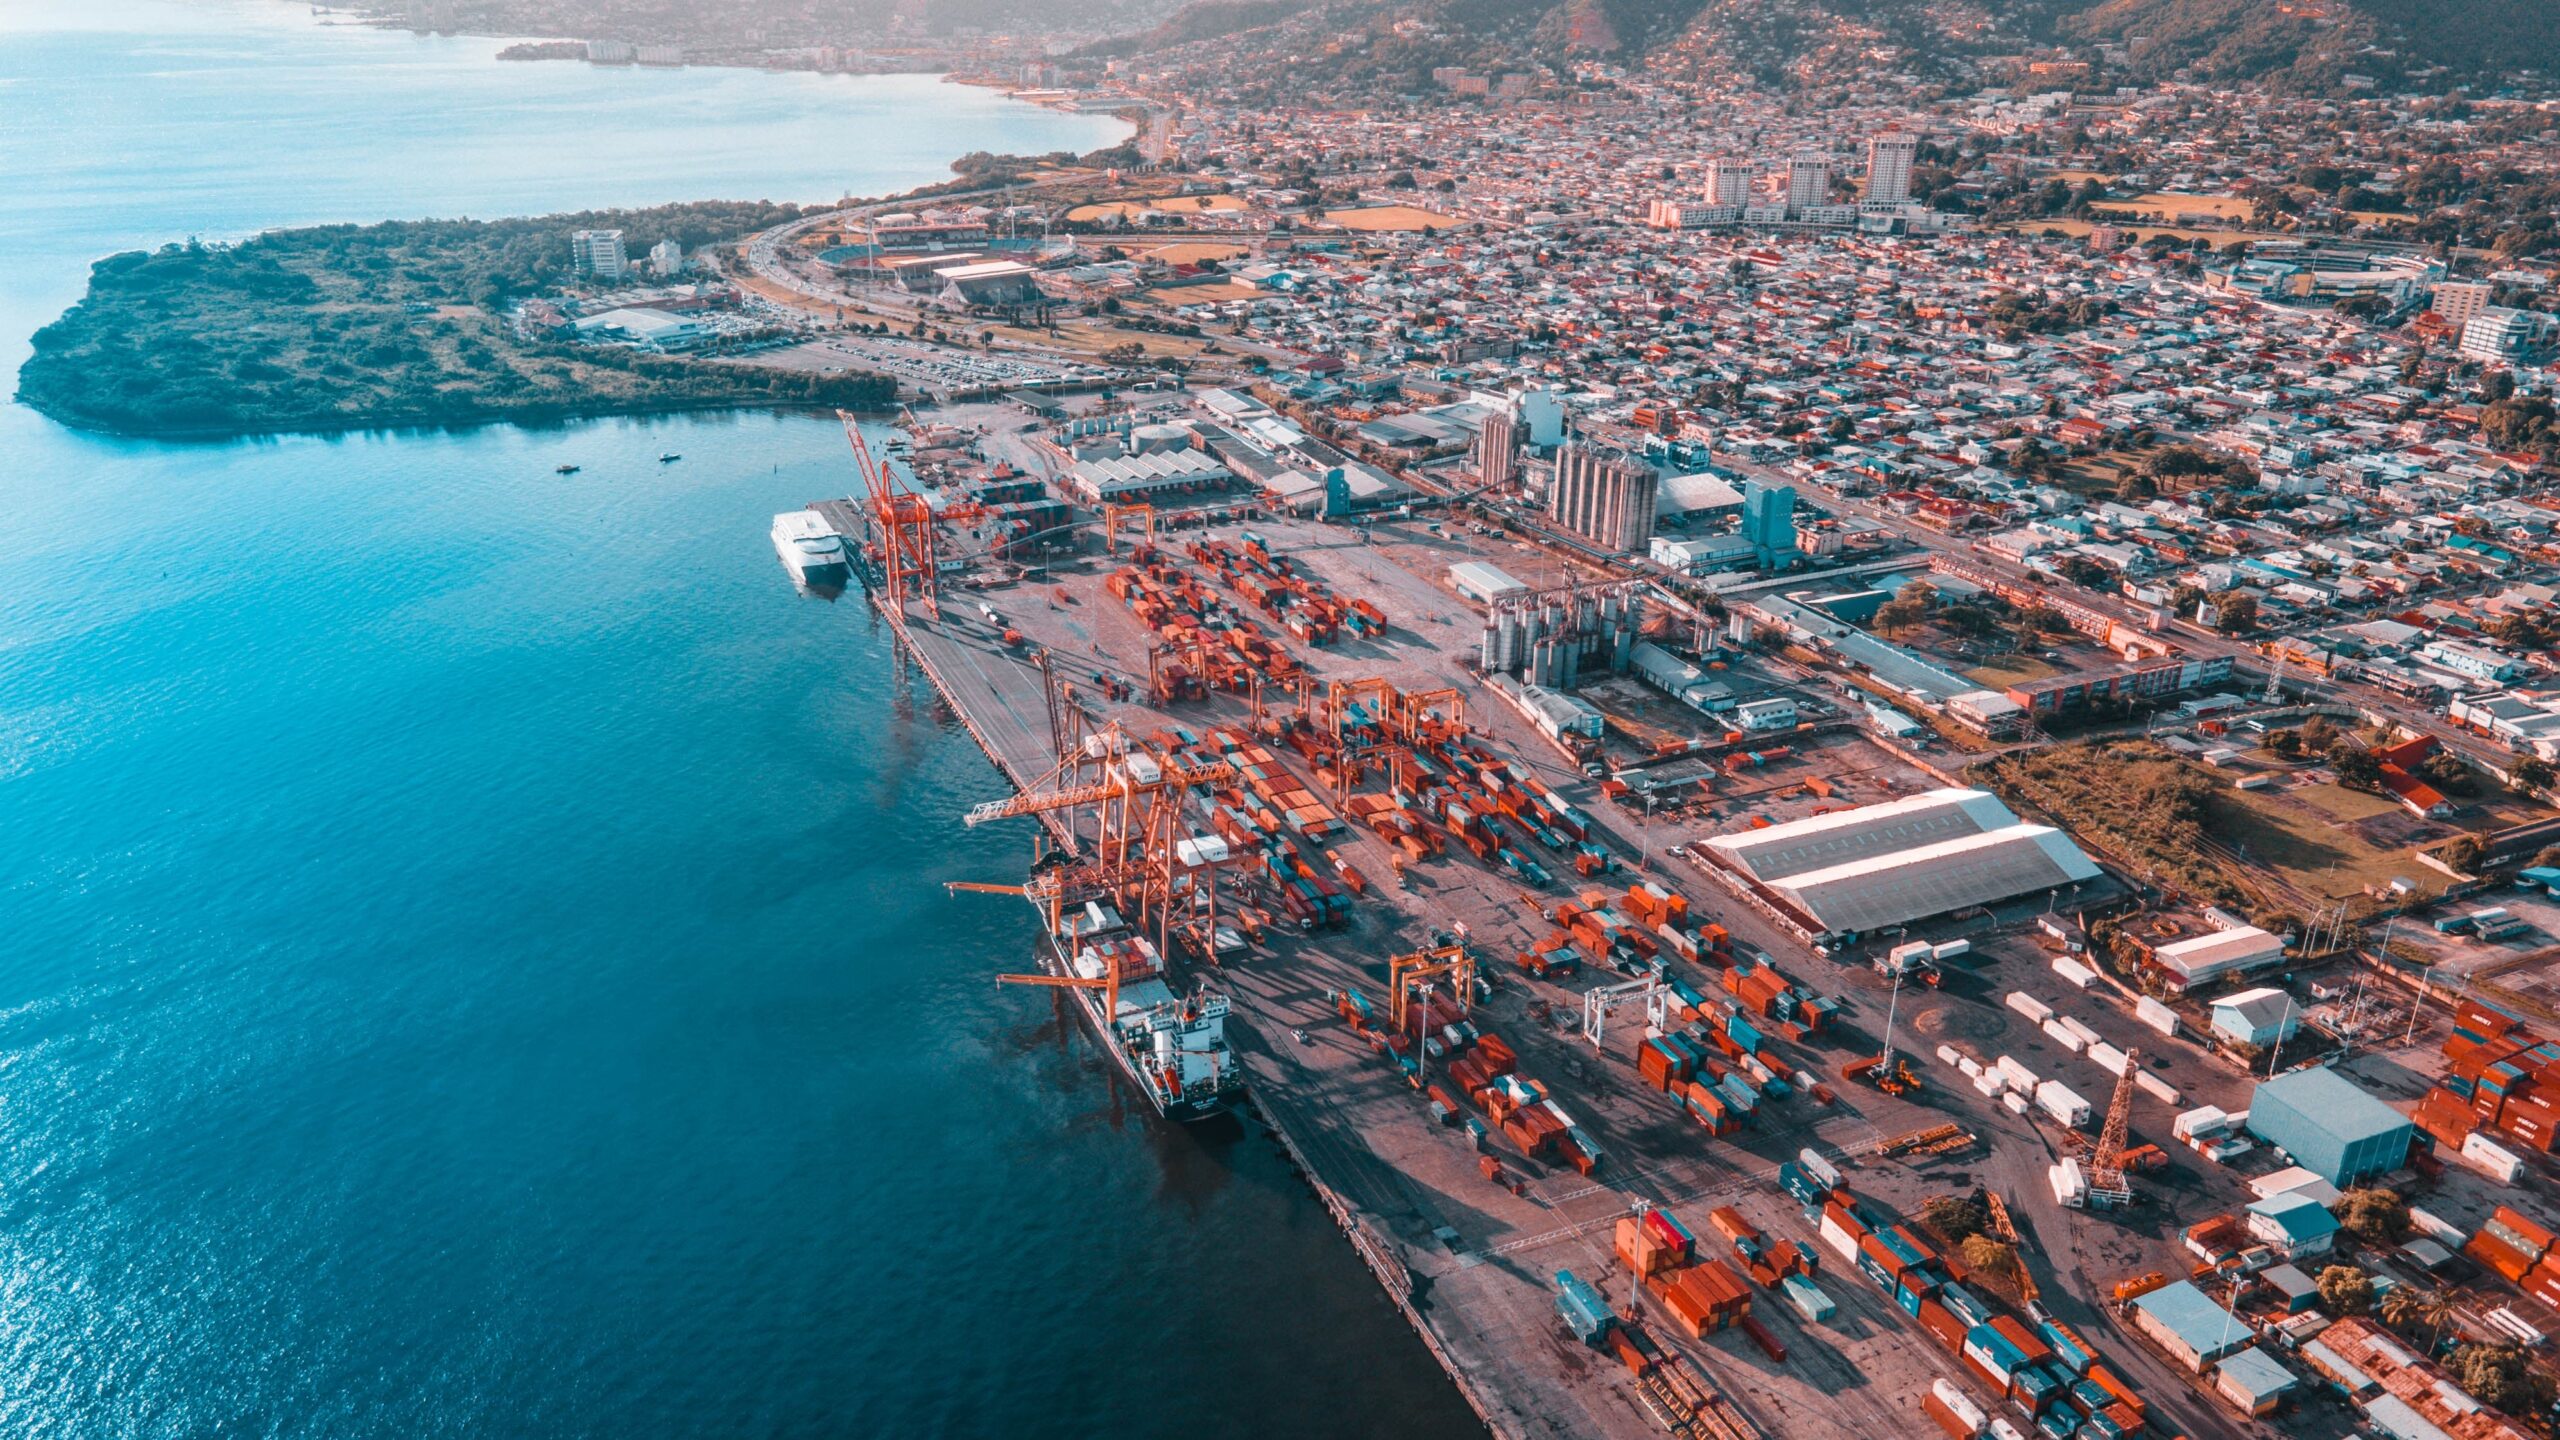 Port Authority of Trinidad & Tobago, Dock Road, Port of Spain, Trinidad and Tobago